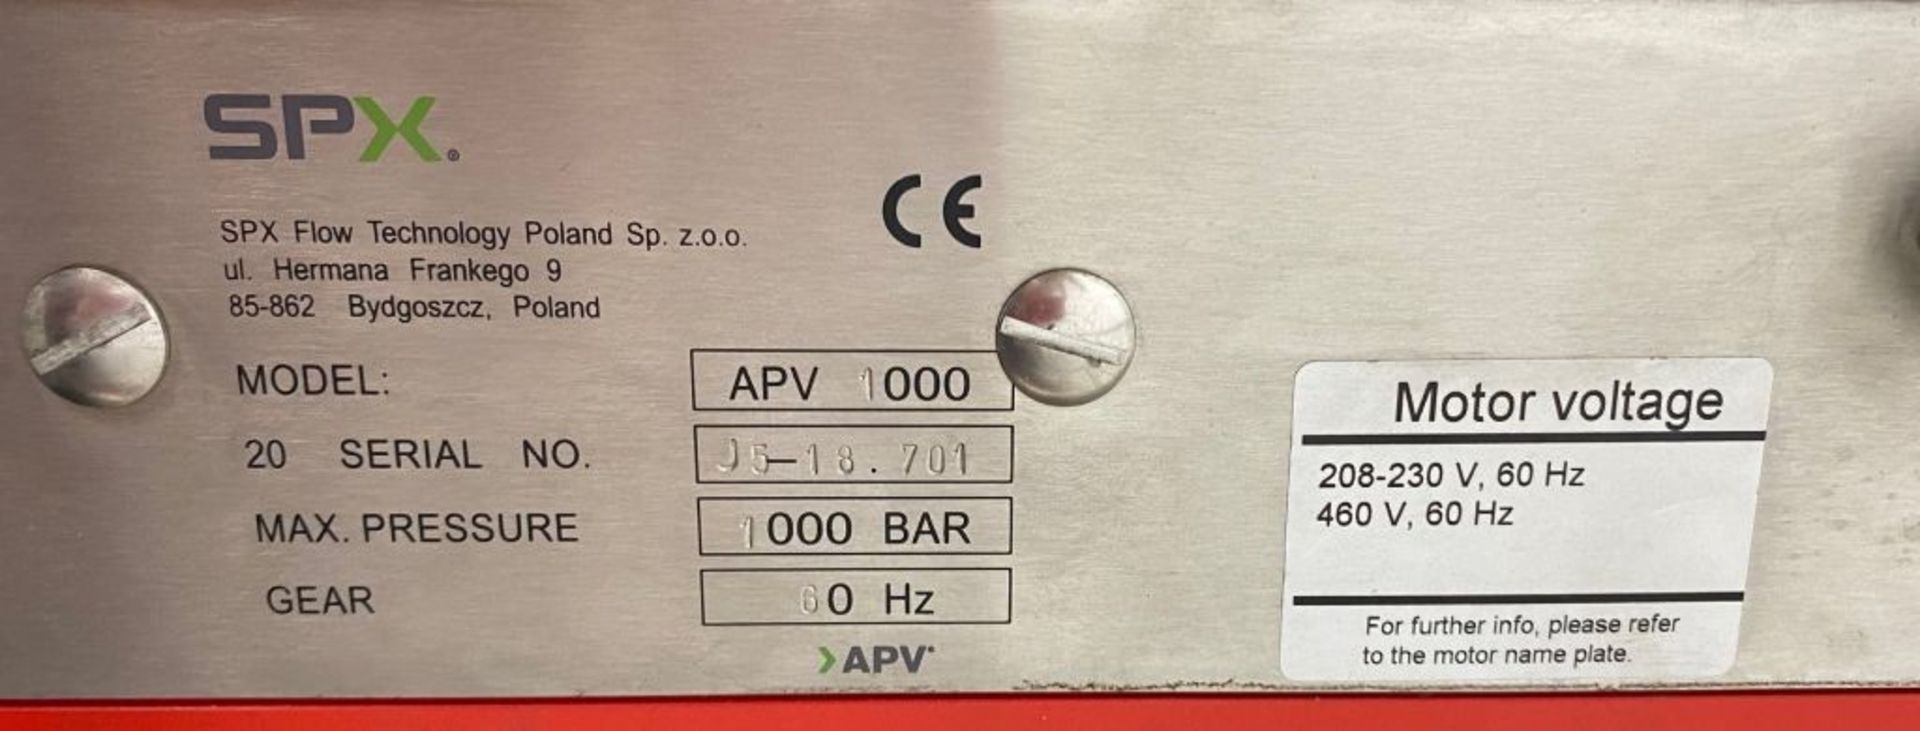 SPX APV1000 Homogenizer. Unit features: 208-230/460 Volt, 60 Hz. Capacity: 6 Gal/Hr (22 L/Hr), - Image 3 of 3